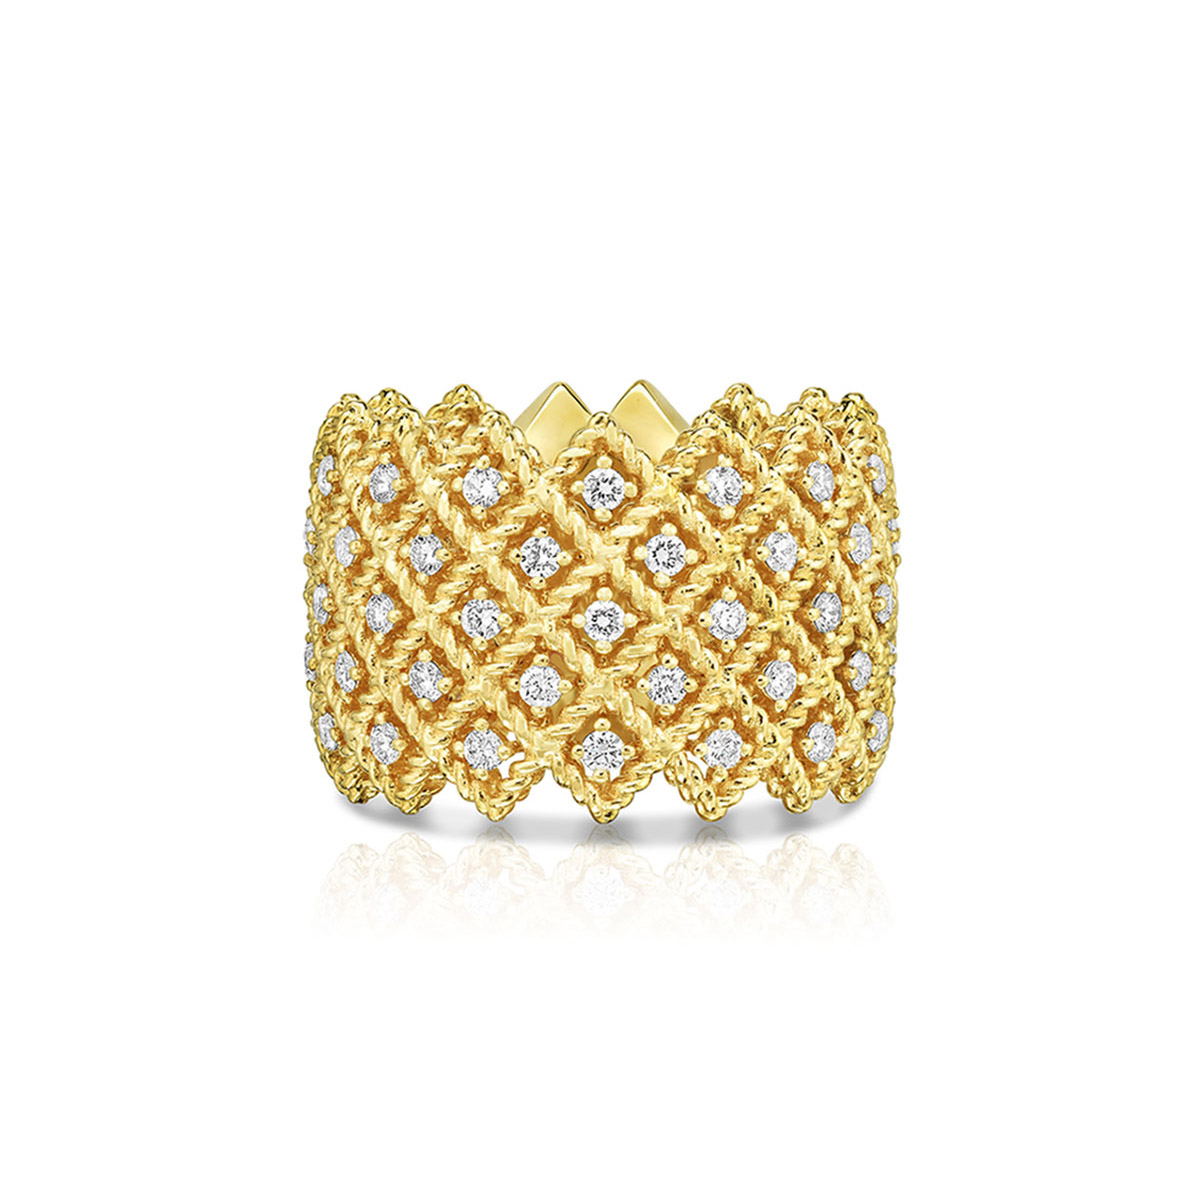 Atacado oferecendo joias personalizadas OEM/ODM anel de cinco fileiras com diamantes em joias de design em ouro amarelo 18K